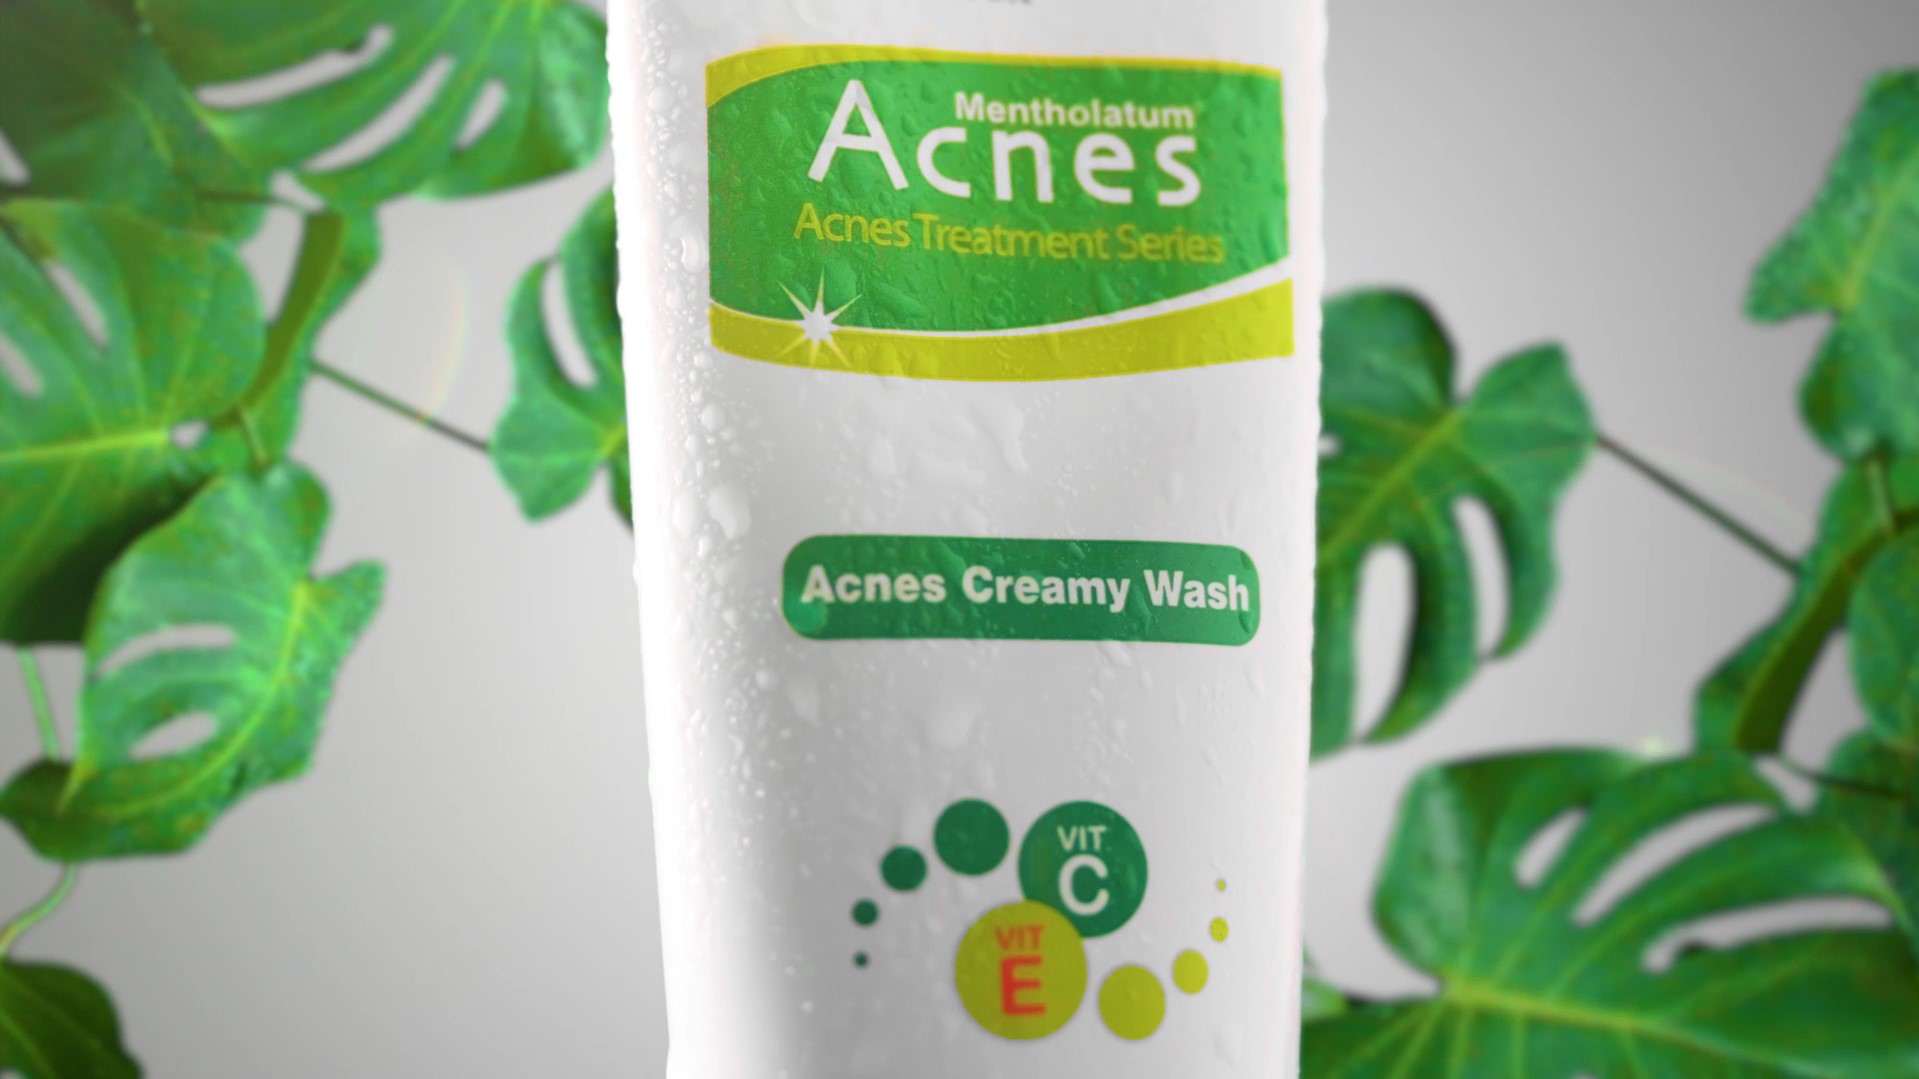 Acnes Creamy Wash Commercial Video